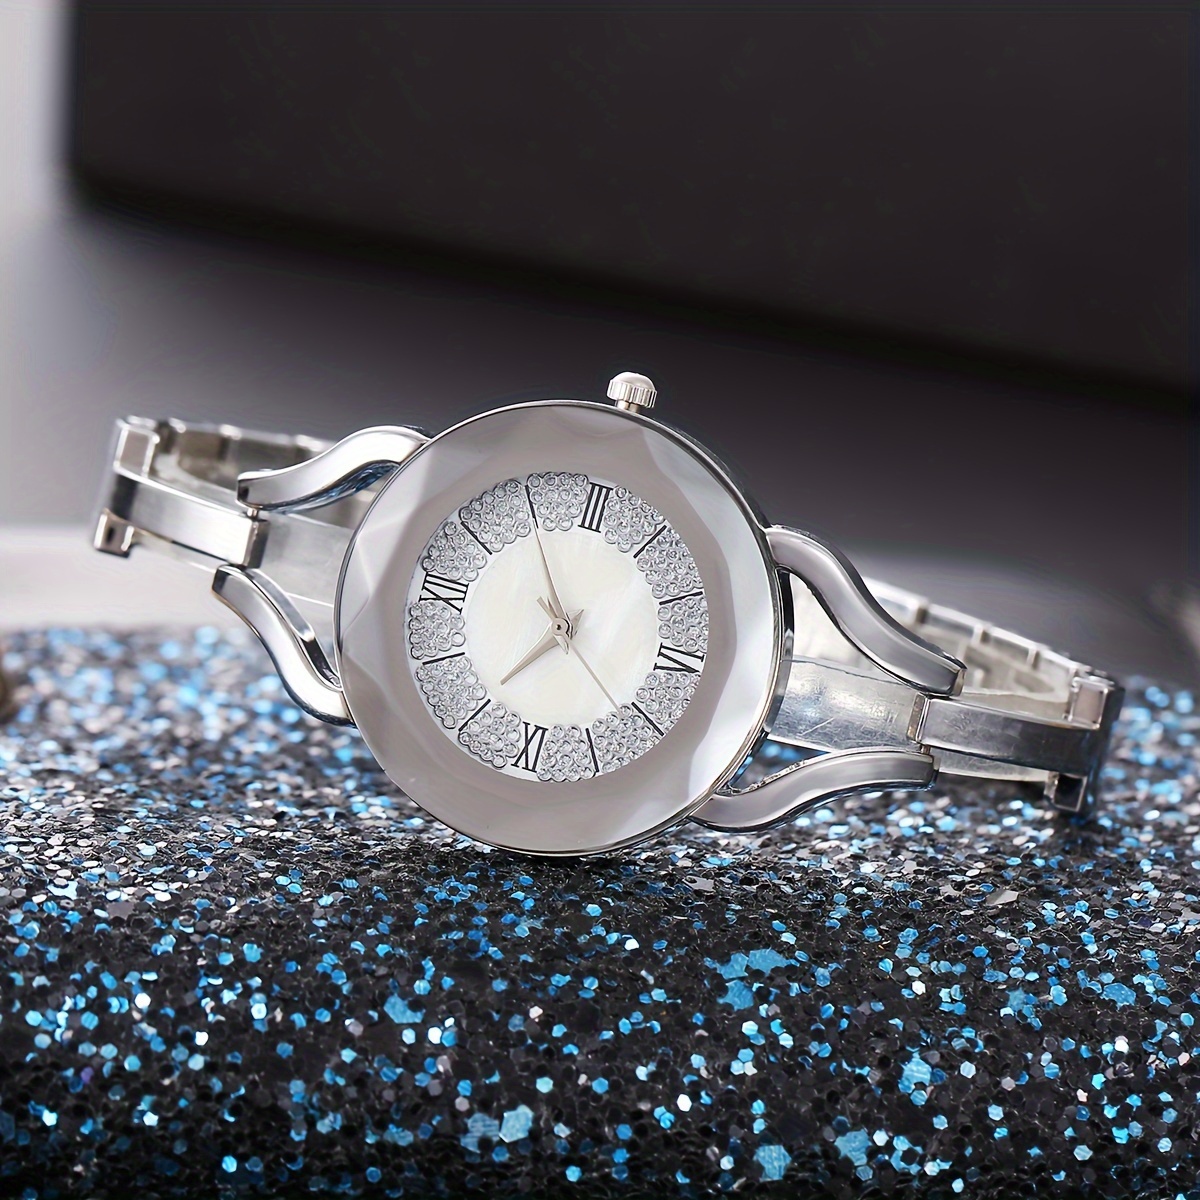 Luxus Mode Gold Armreif Armband Frauen Uhren Edelstahl Retro Damen Quarz  Armbanduhren Kleine Uhr